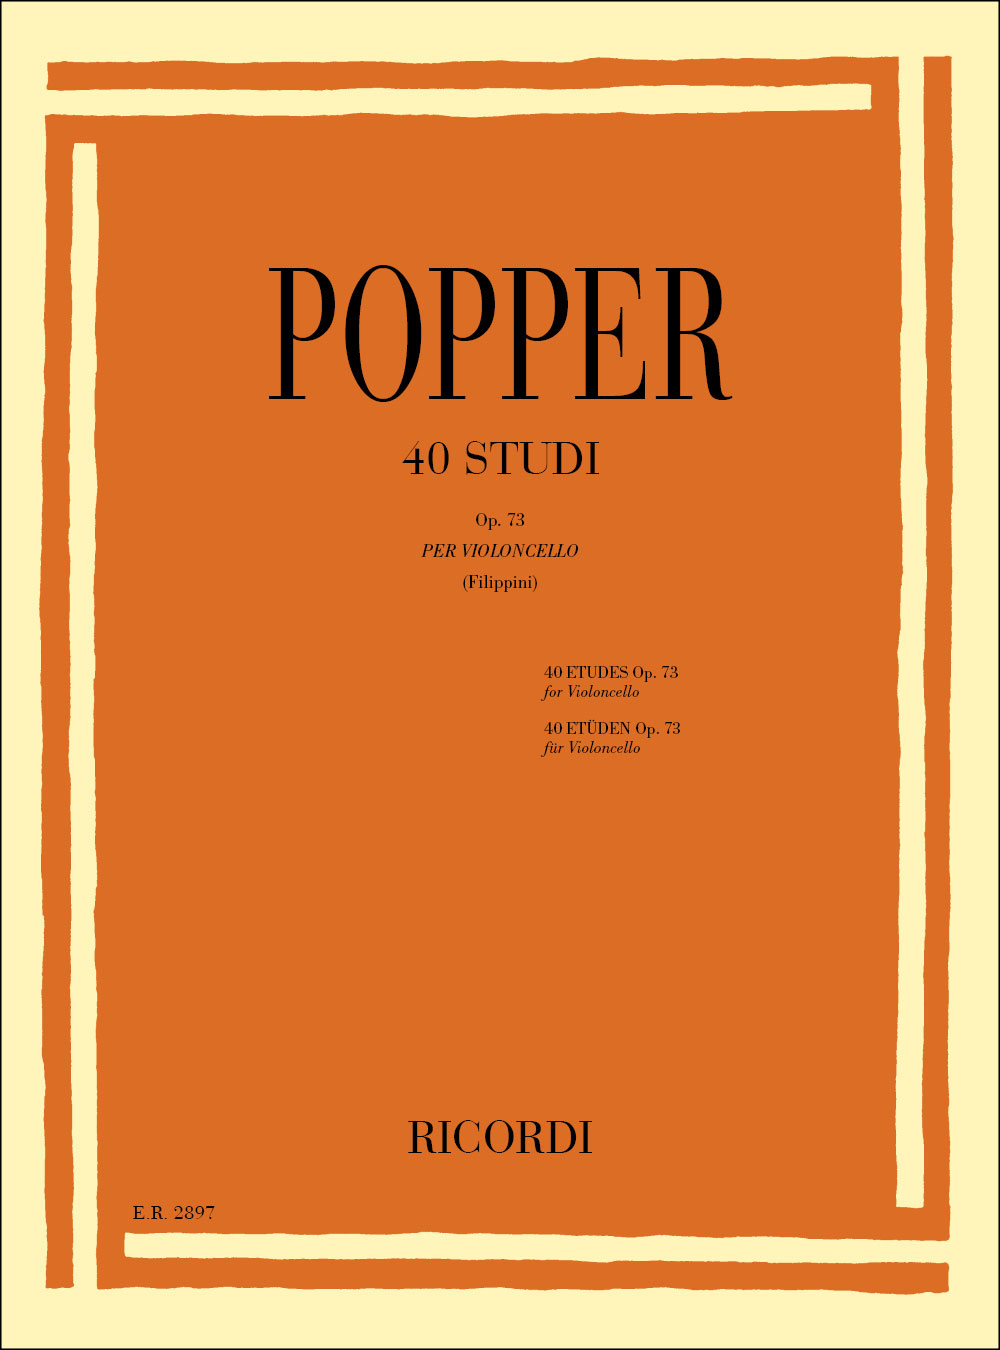 RICORDI POPPER D. - 40 STUDI OP.73 - VIOLONCELLE